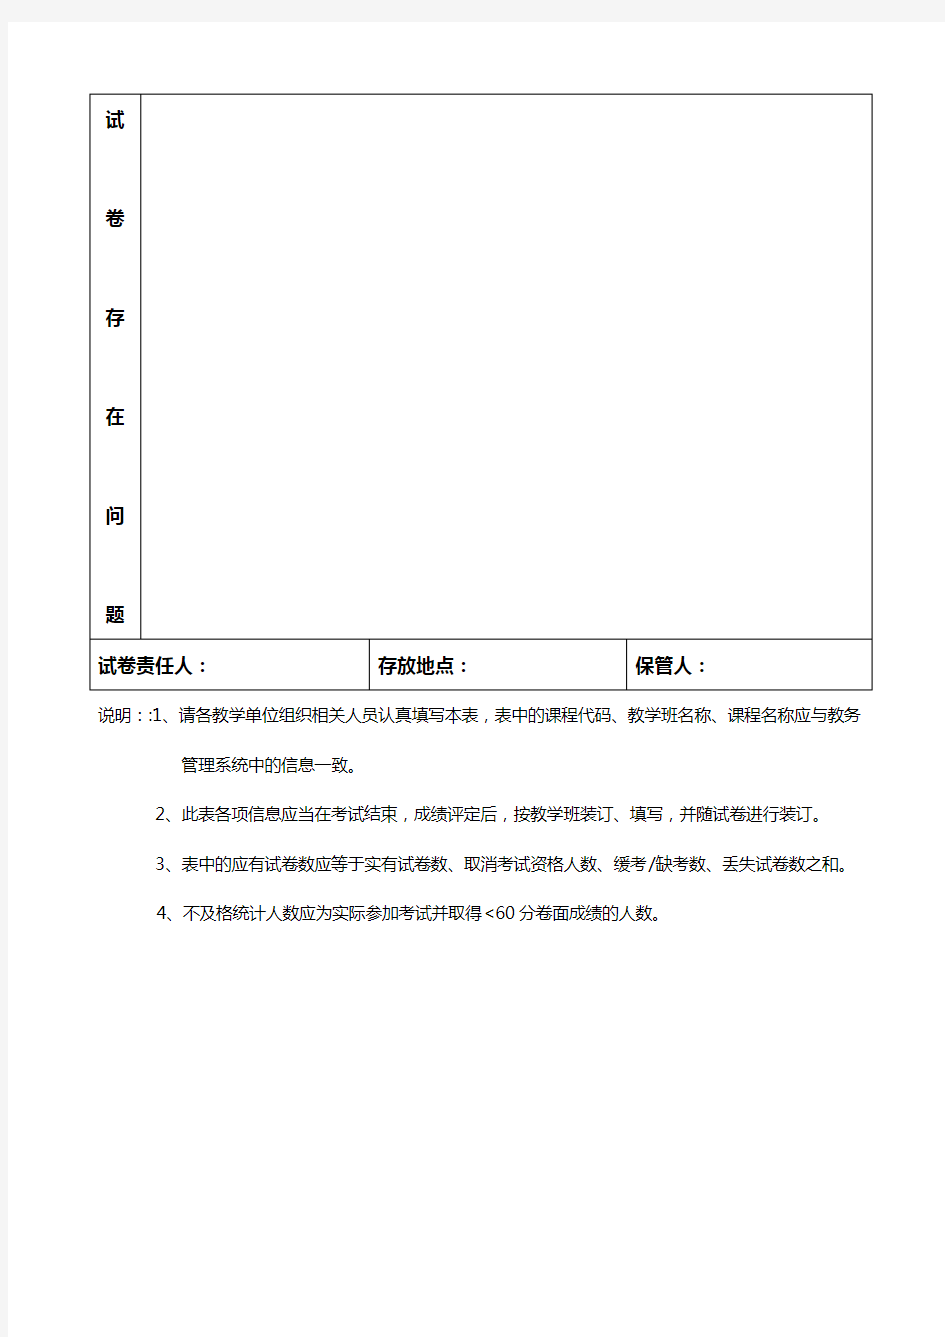 郑州航空工业管理学院试卷清查信息登记表